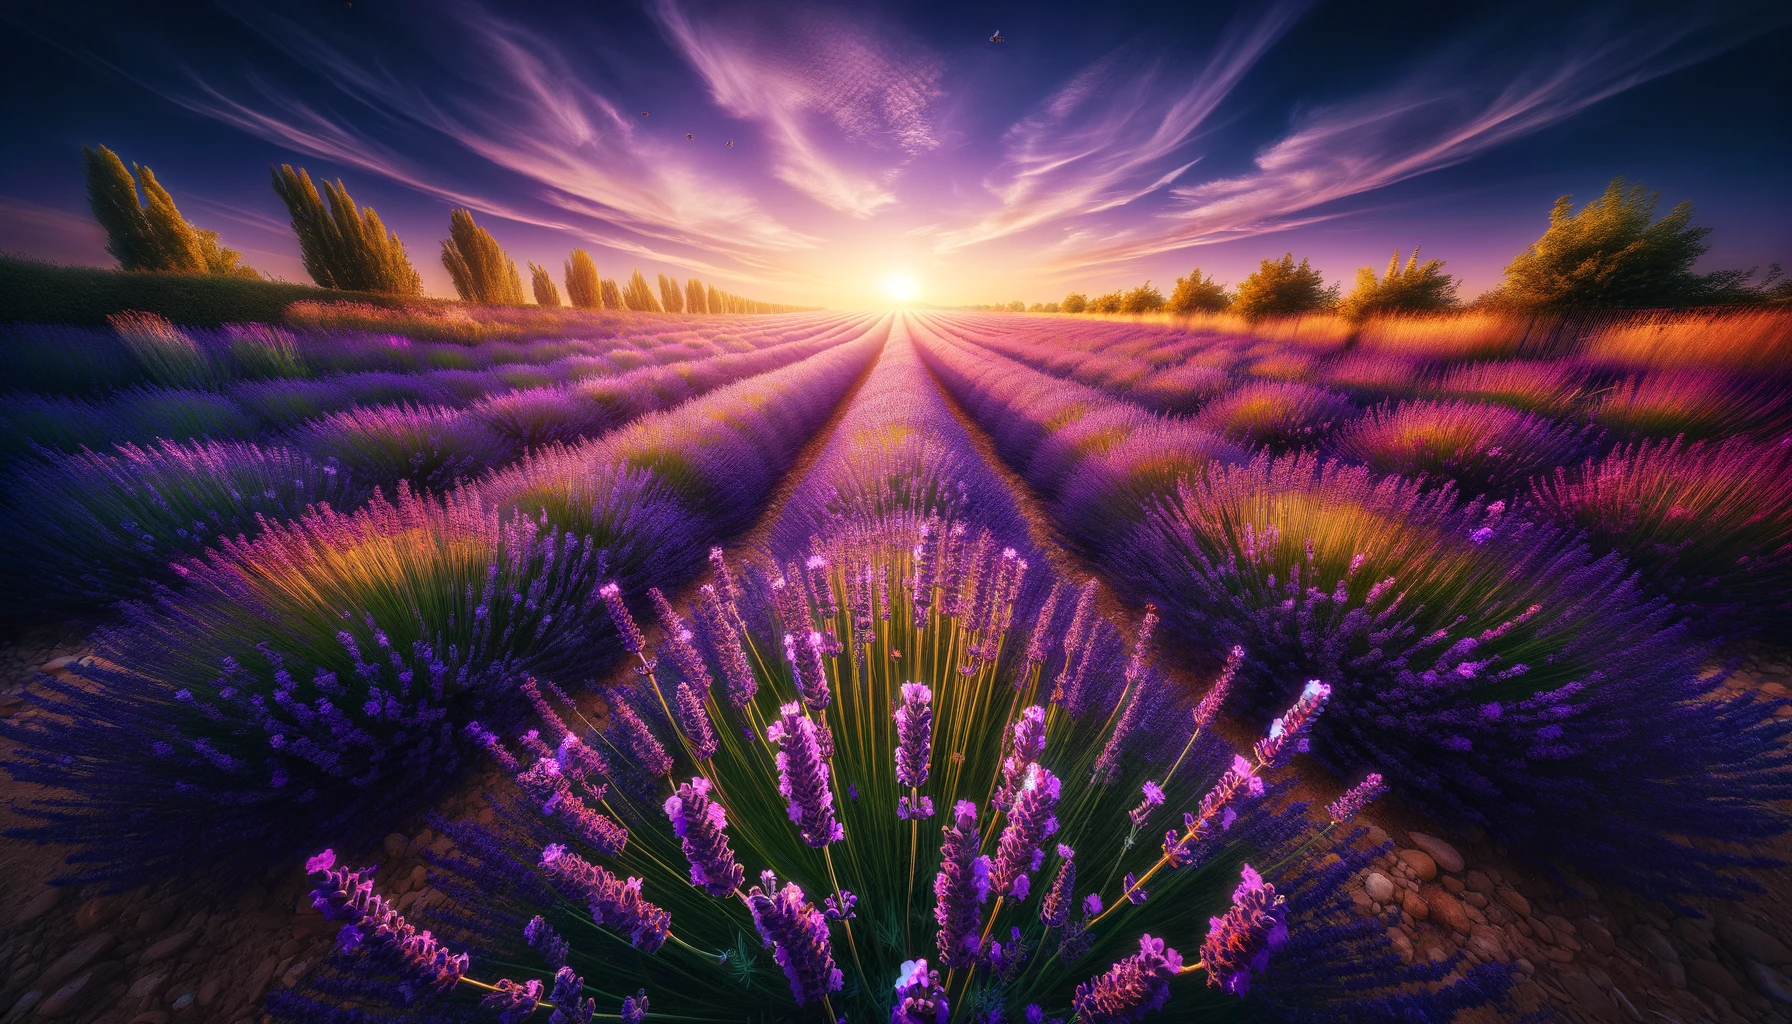 Sunrise over vibrant lavender fields.